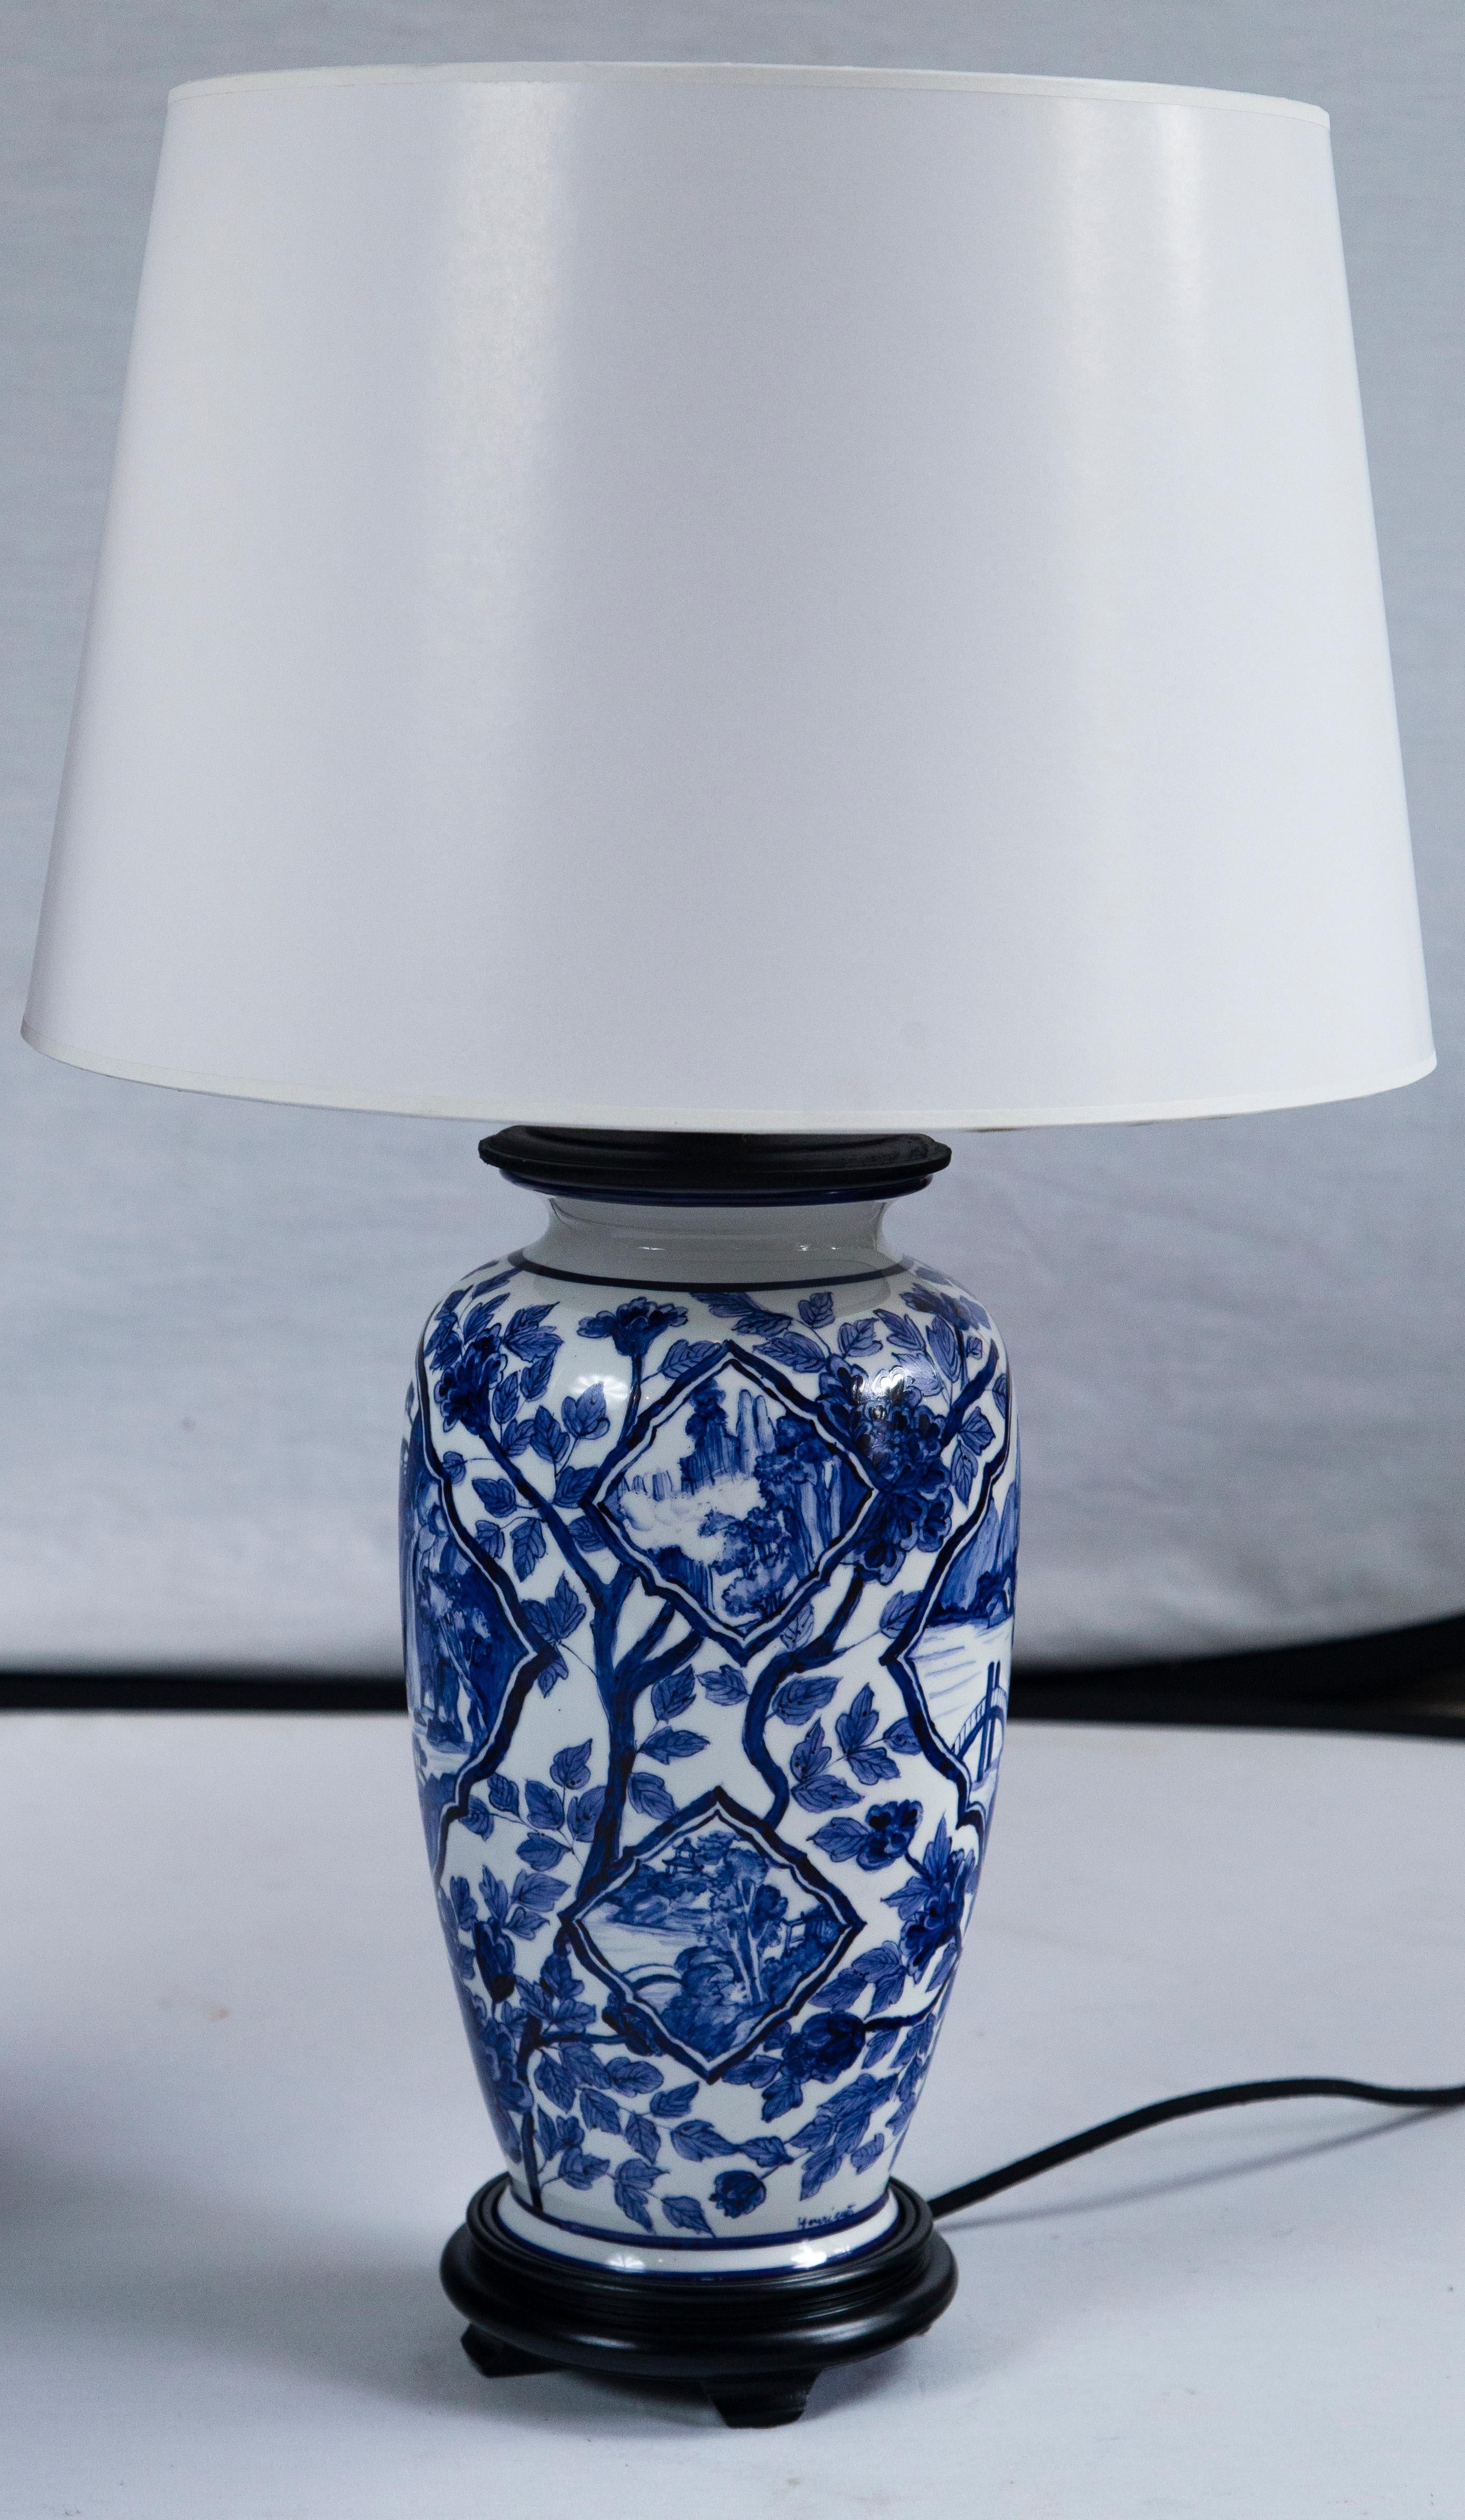 Paire de lampes asiatiques vintage en céramique, 20e siècle. Motif floral bleu et blanc avec des motifs de paysage. Câblage et montage neufs.